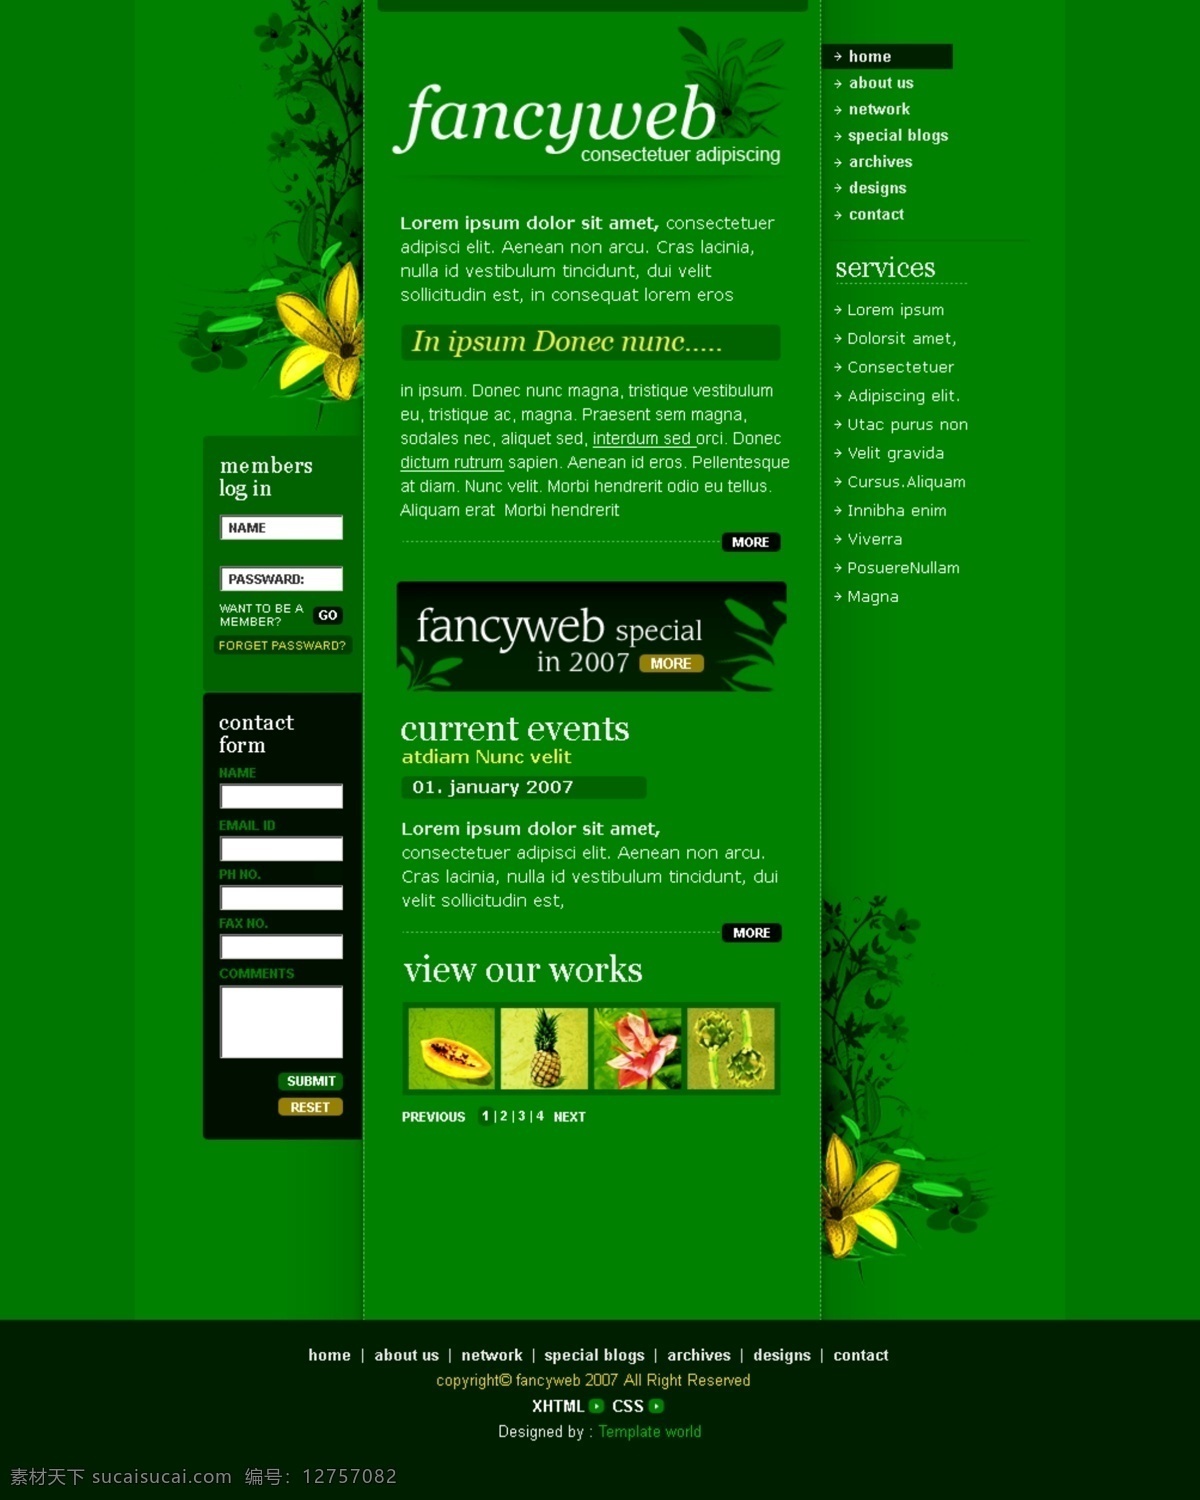 菠萝 登录框 个性导航 黑色 绿色网页设计 欧美模板 网页模板 网页设计 绿色 风格 底部花纹 首页 深绿色 源文件 网页素材